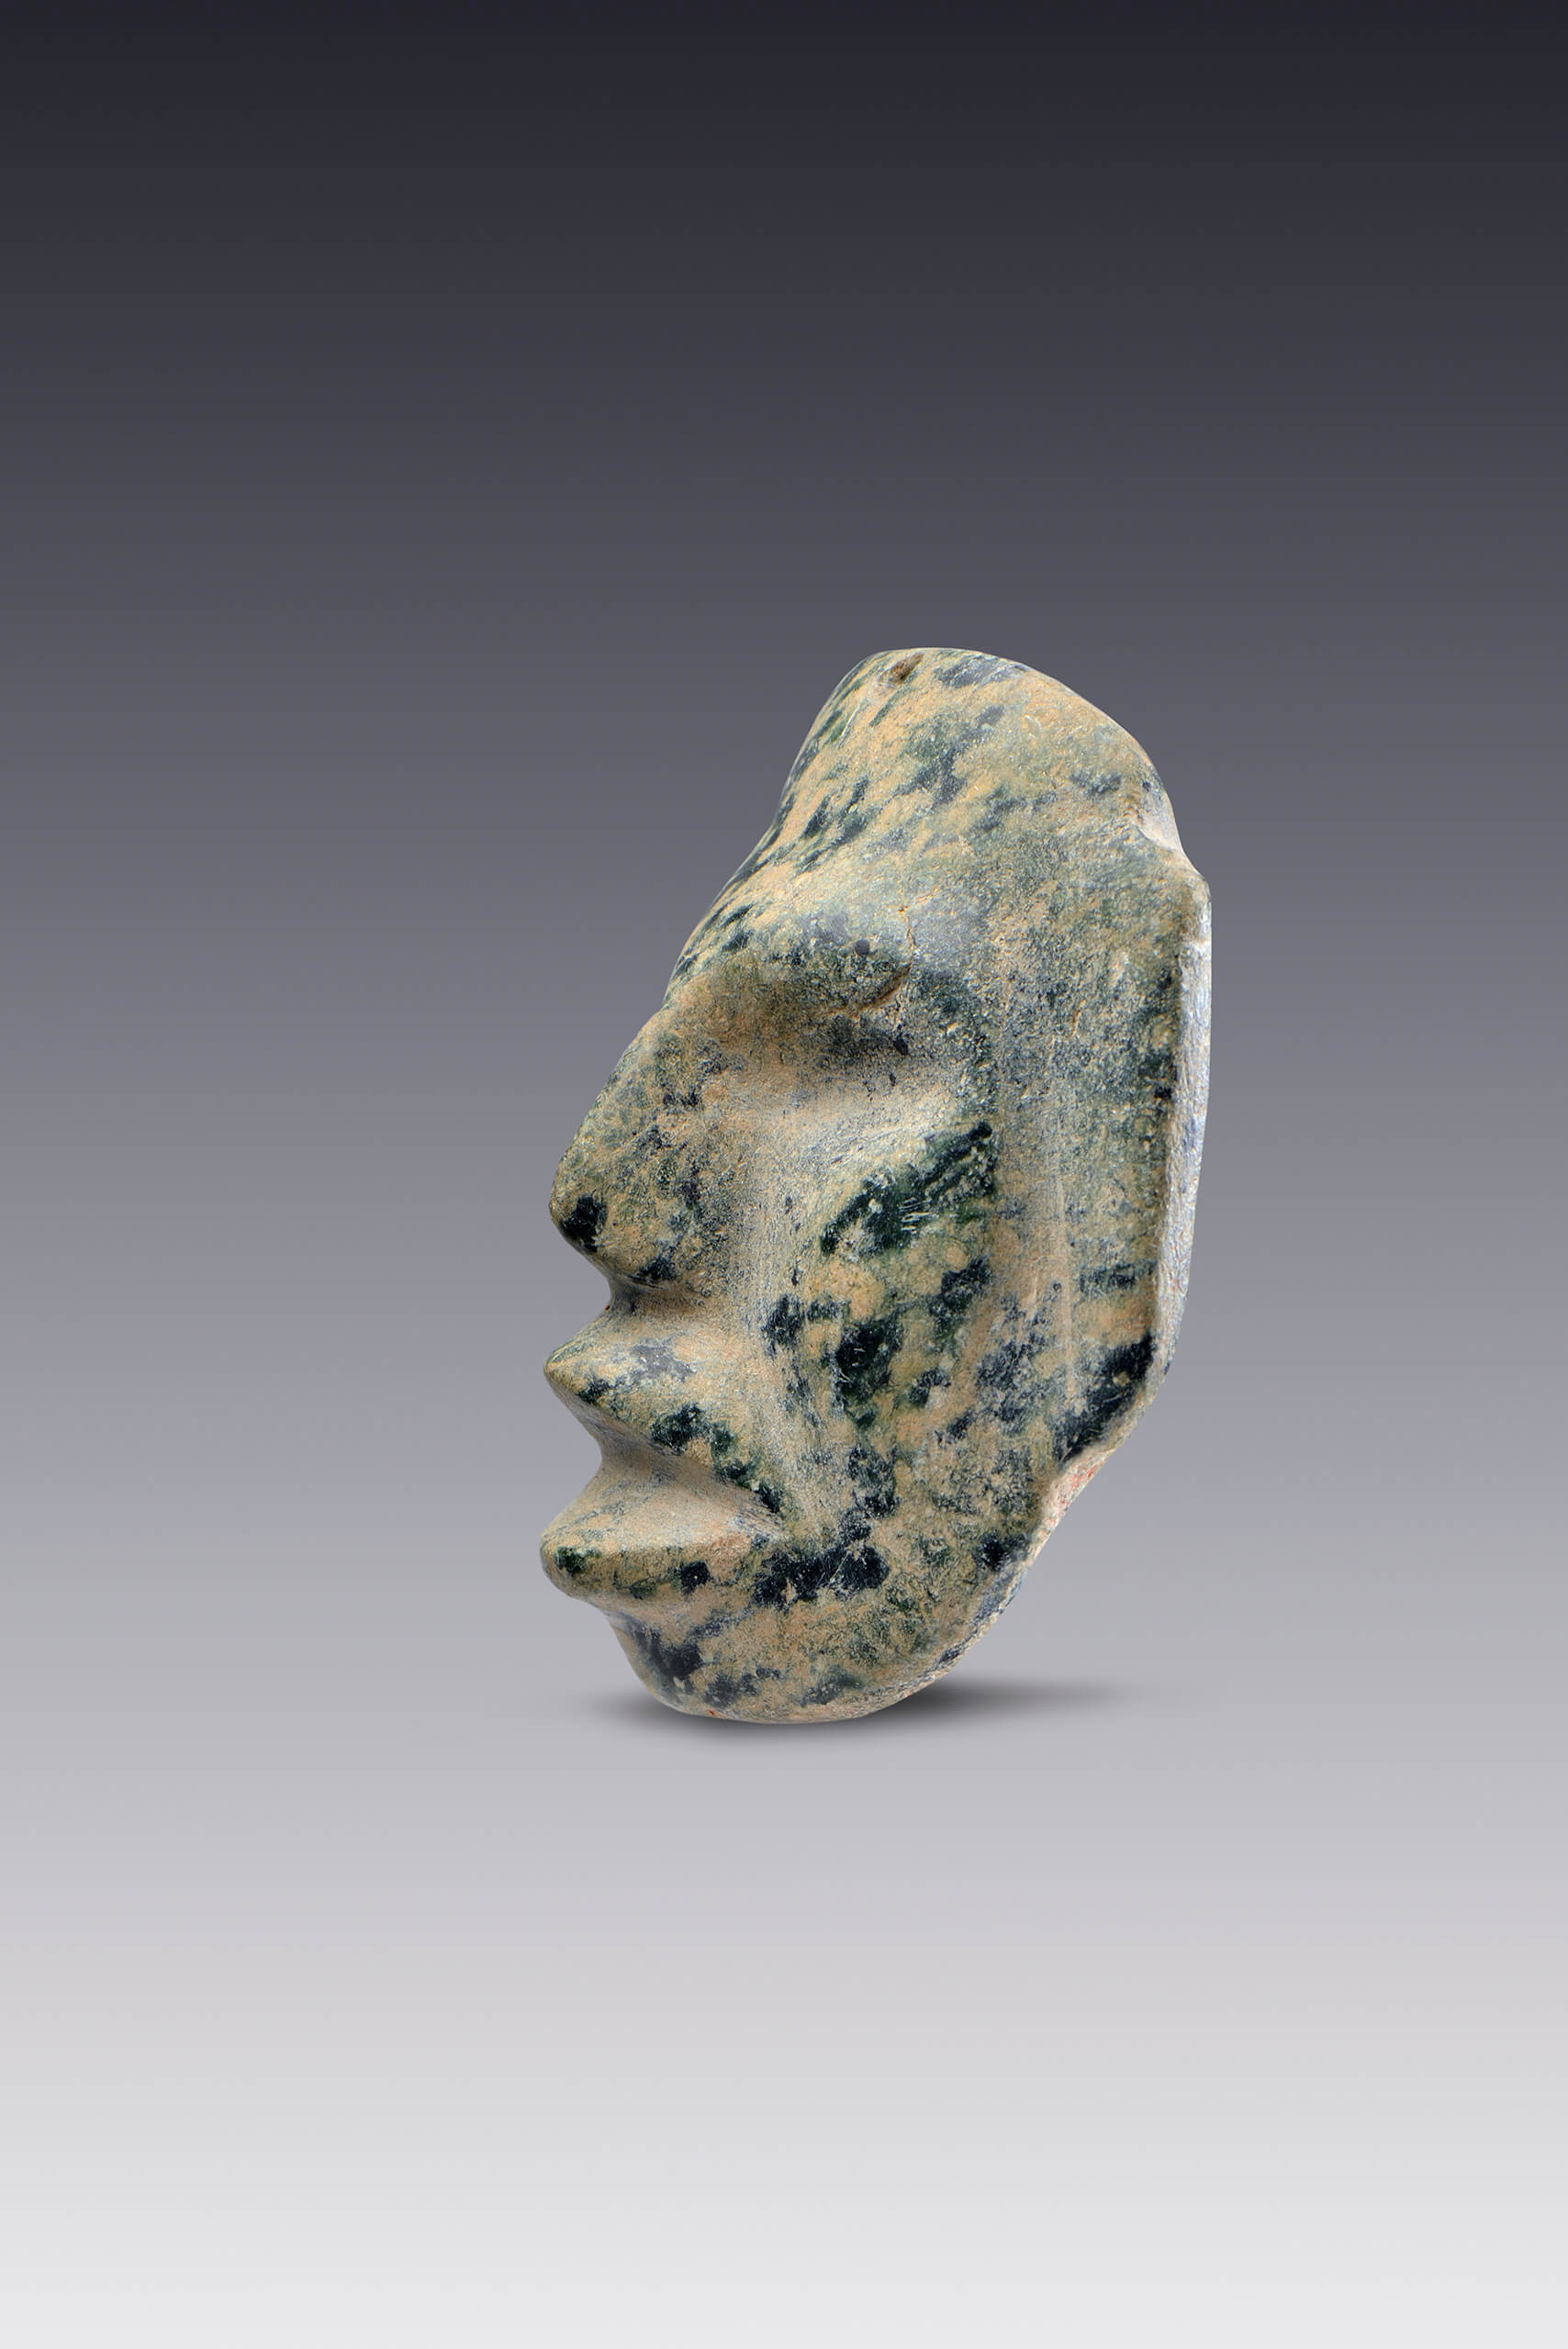 Joya colgante con forma de rostro en piedra moteada | El México antiguo. Salas de Arte Prehispánico | Museo Amparo, Puebla